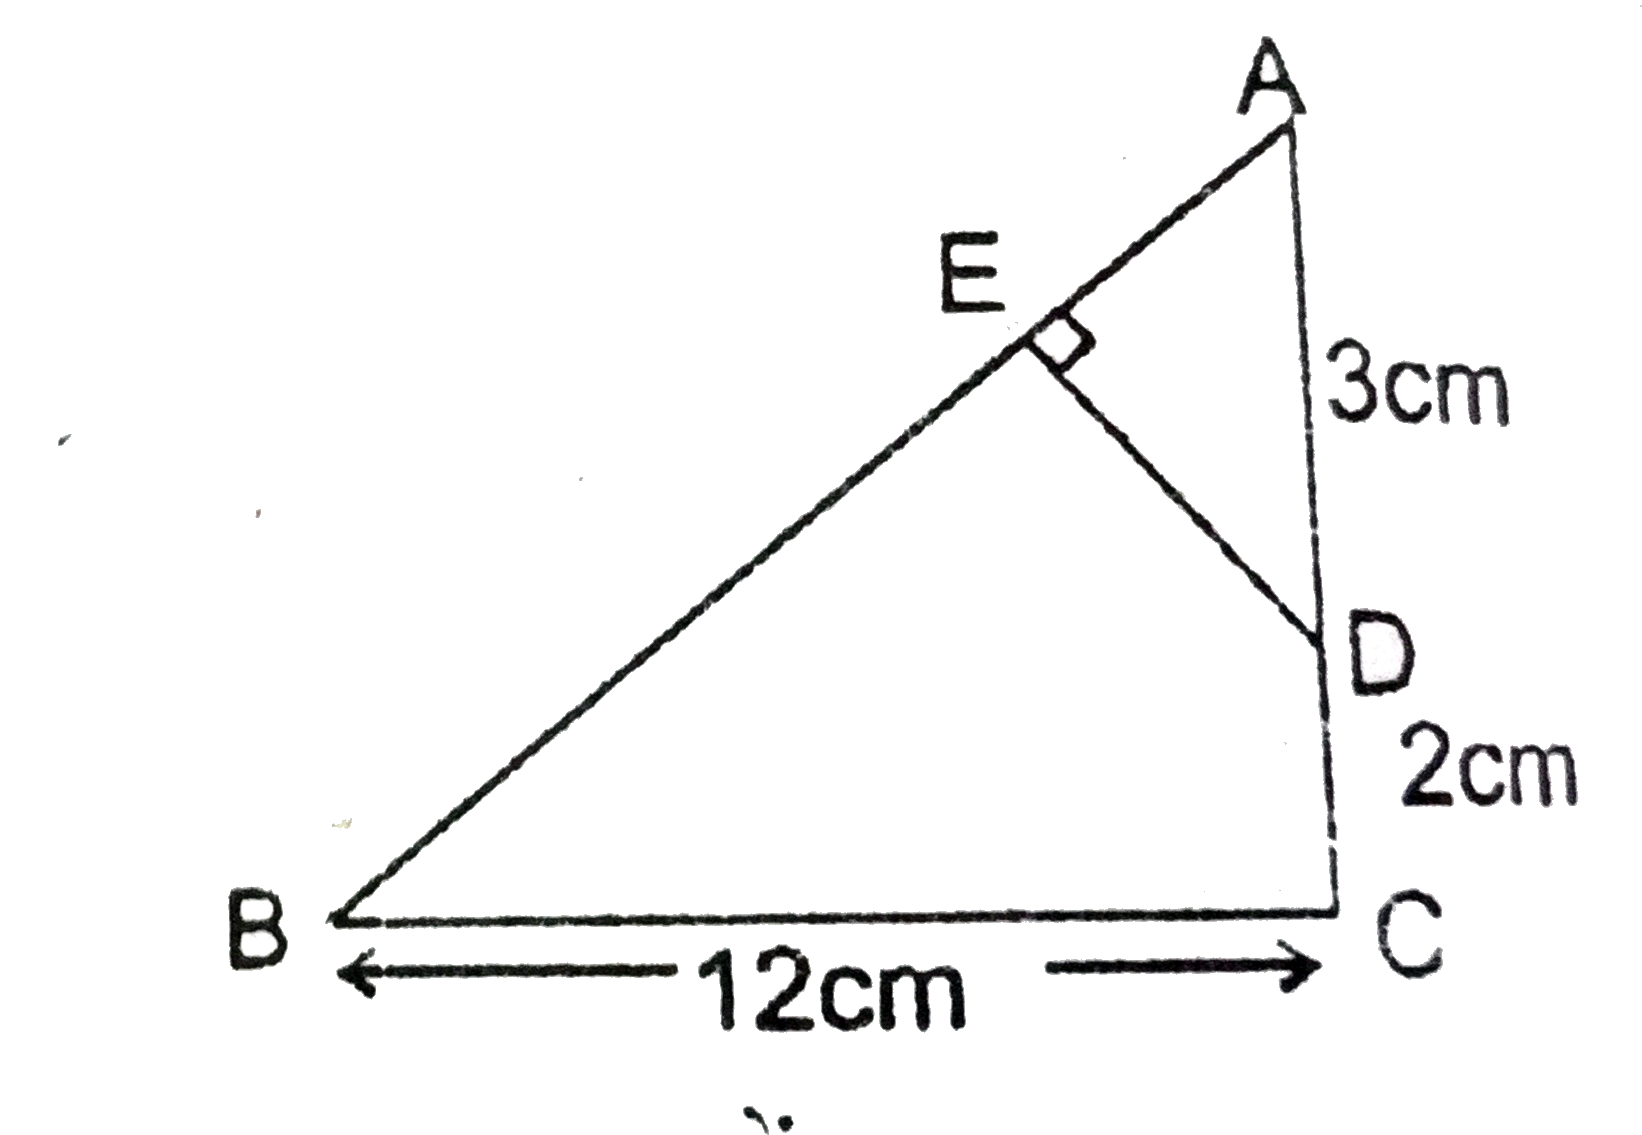 दिए गए चित्र में एक समकोण त्रिभुज है जिसका angleC समकोण है । सिद्ध करें कि DeltaABC~DeltaADE और AE एवं DE की लम्बाईयाँ ज्ञात करें ।